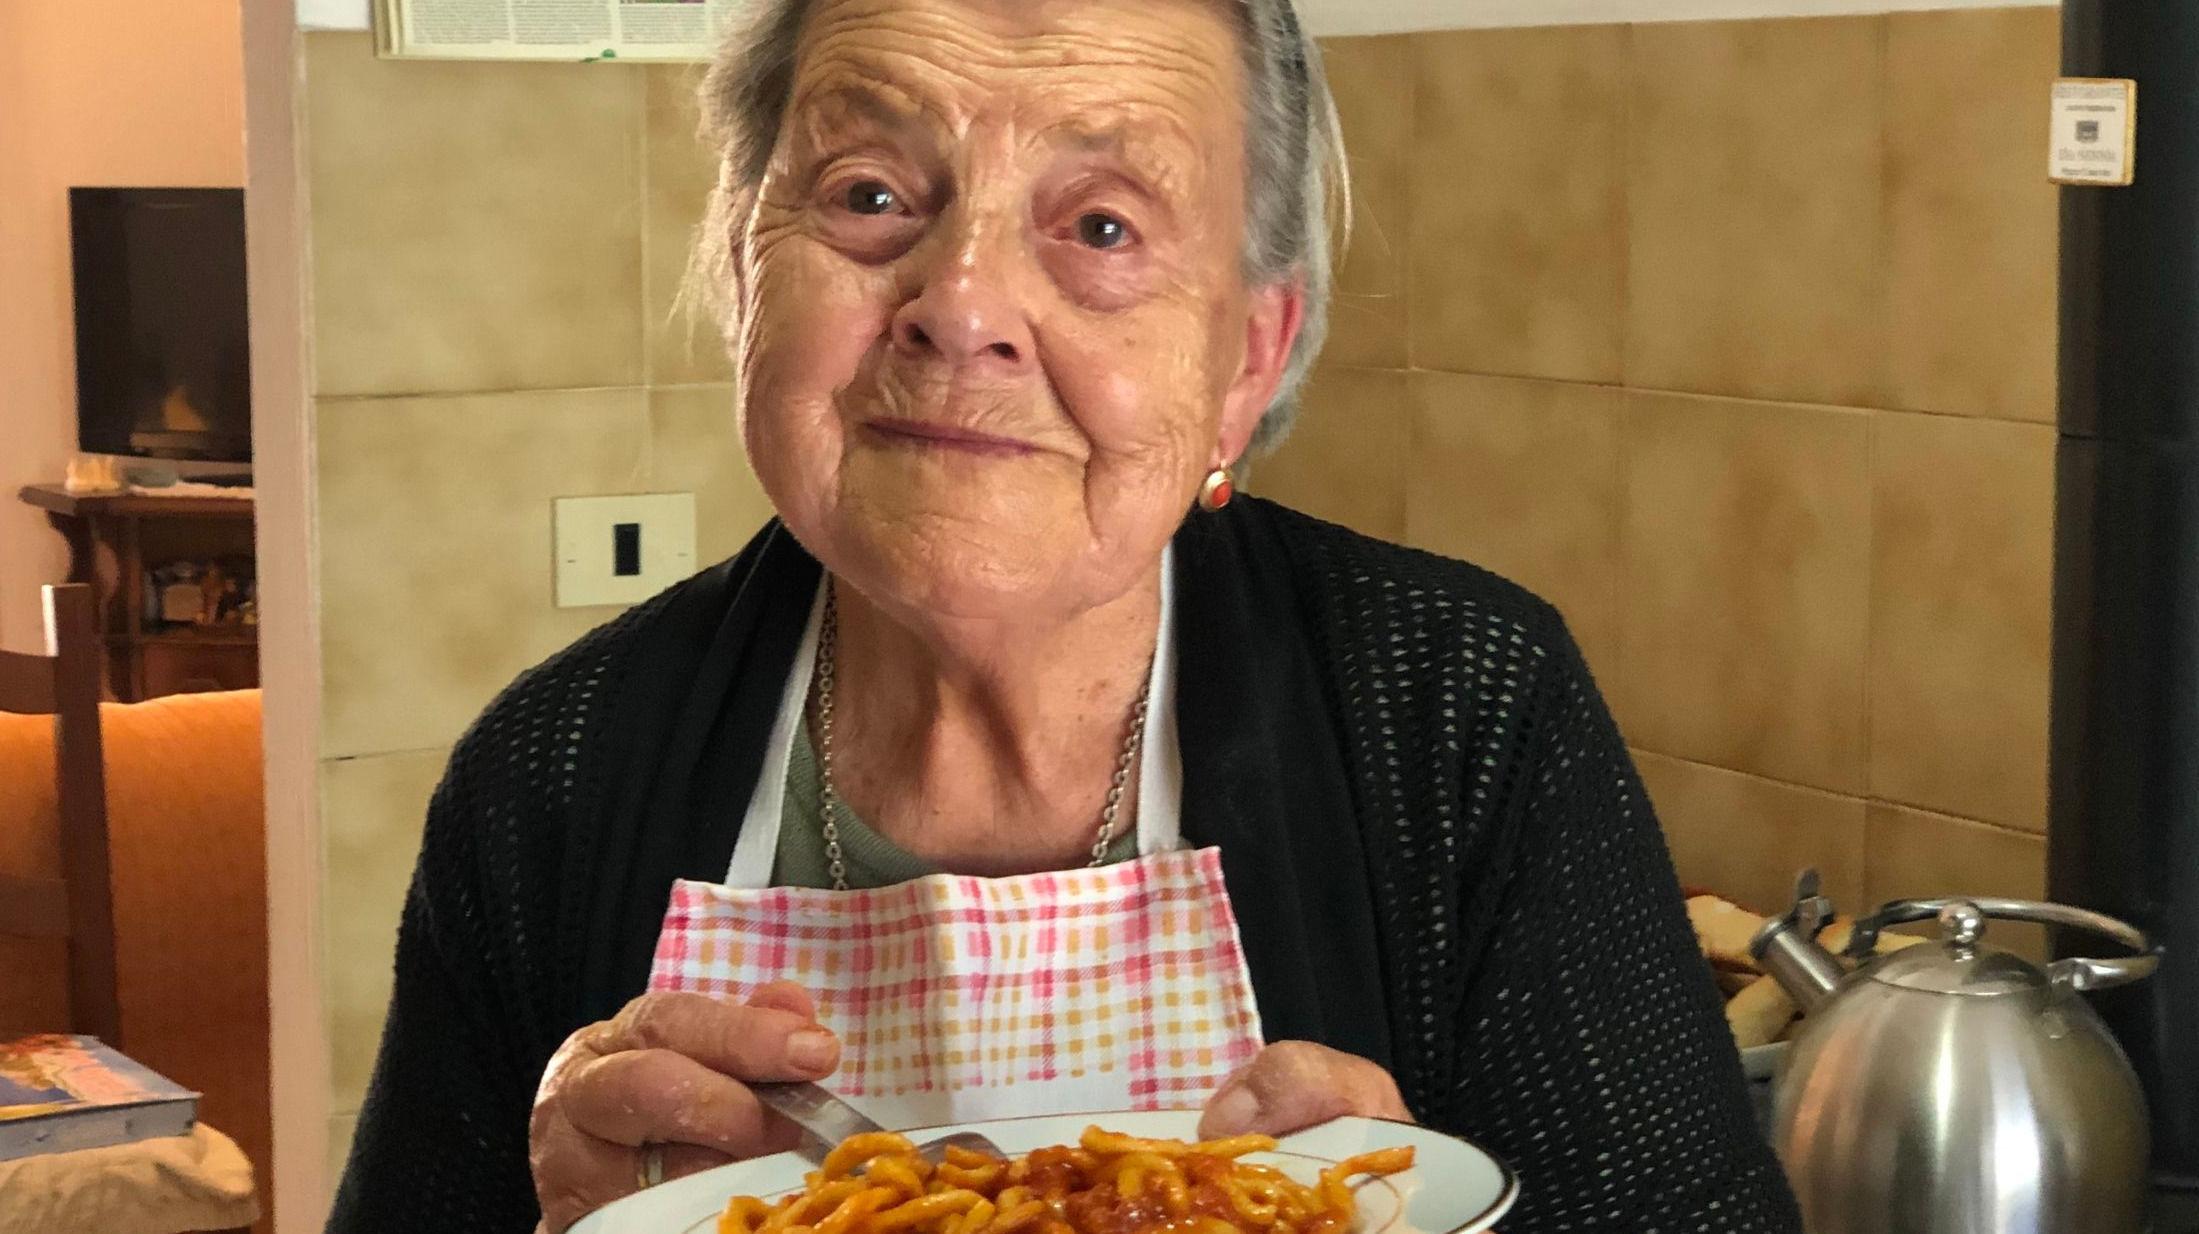 ITALIENSK PASTABESTEMOR: 93 år gamle Giuseppina Spiganti, kalt Peppa, har laget pici all'aglione, tykke spagetti med en saus av tomat og hvitløk. Peppa var for 50 år siden med på å starte en matfestival i landsbyen hun bor, for å hylle den håndrullede pastatypen, som fortsatt eksisterer den dagi dag. Foto: Pasta Grannies